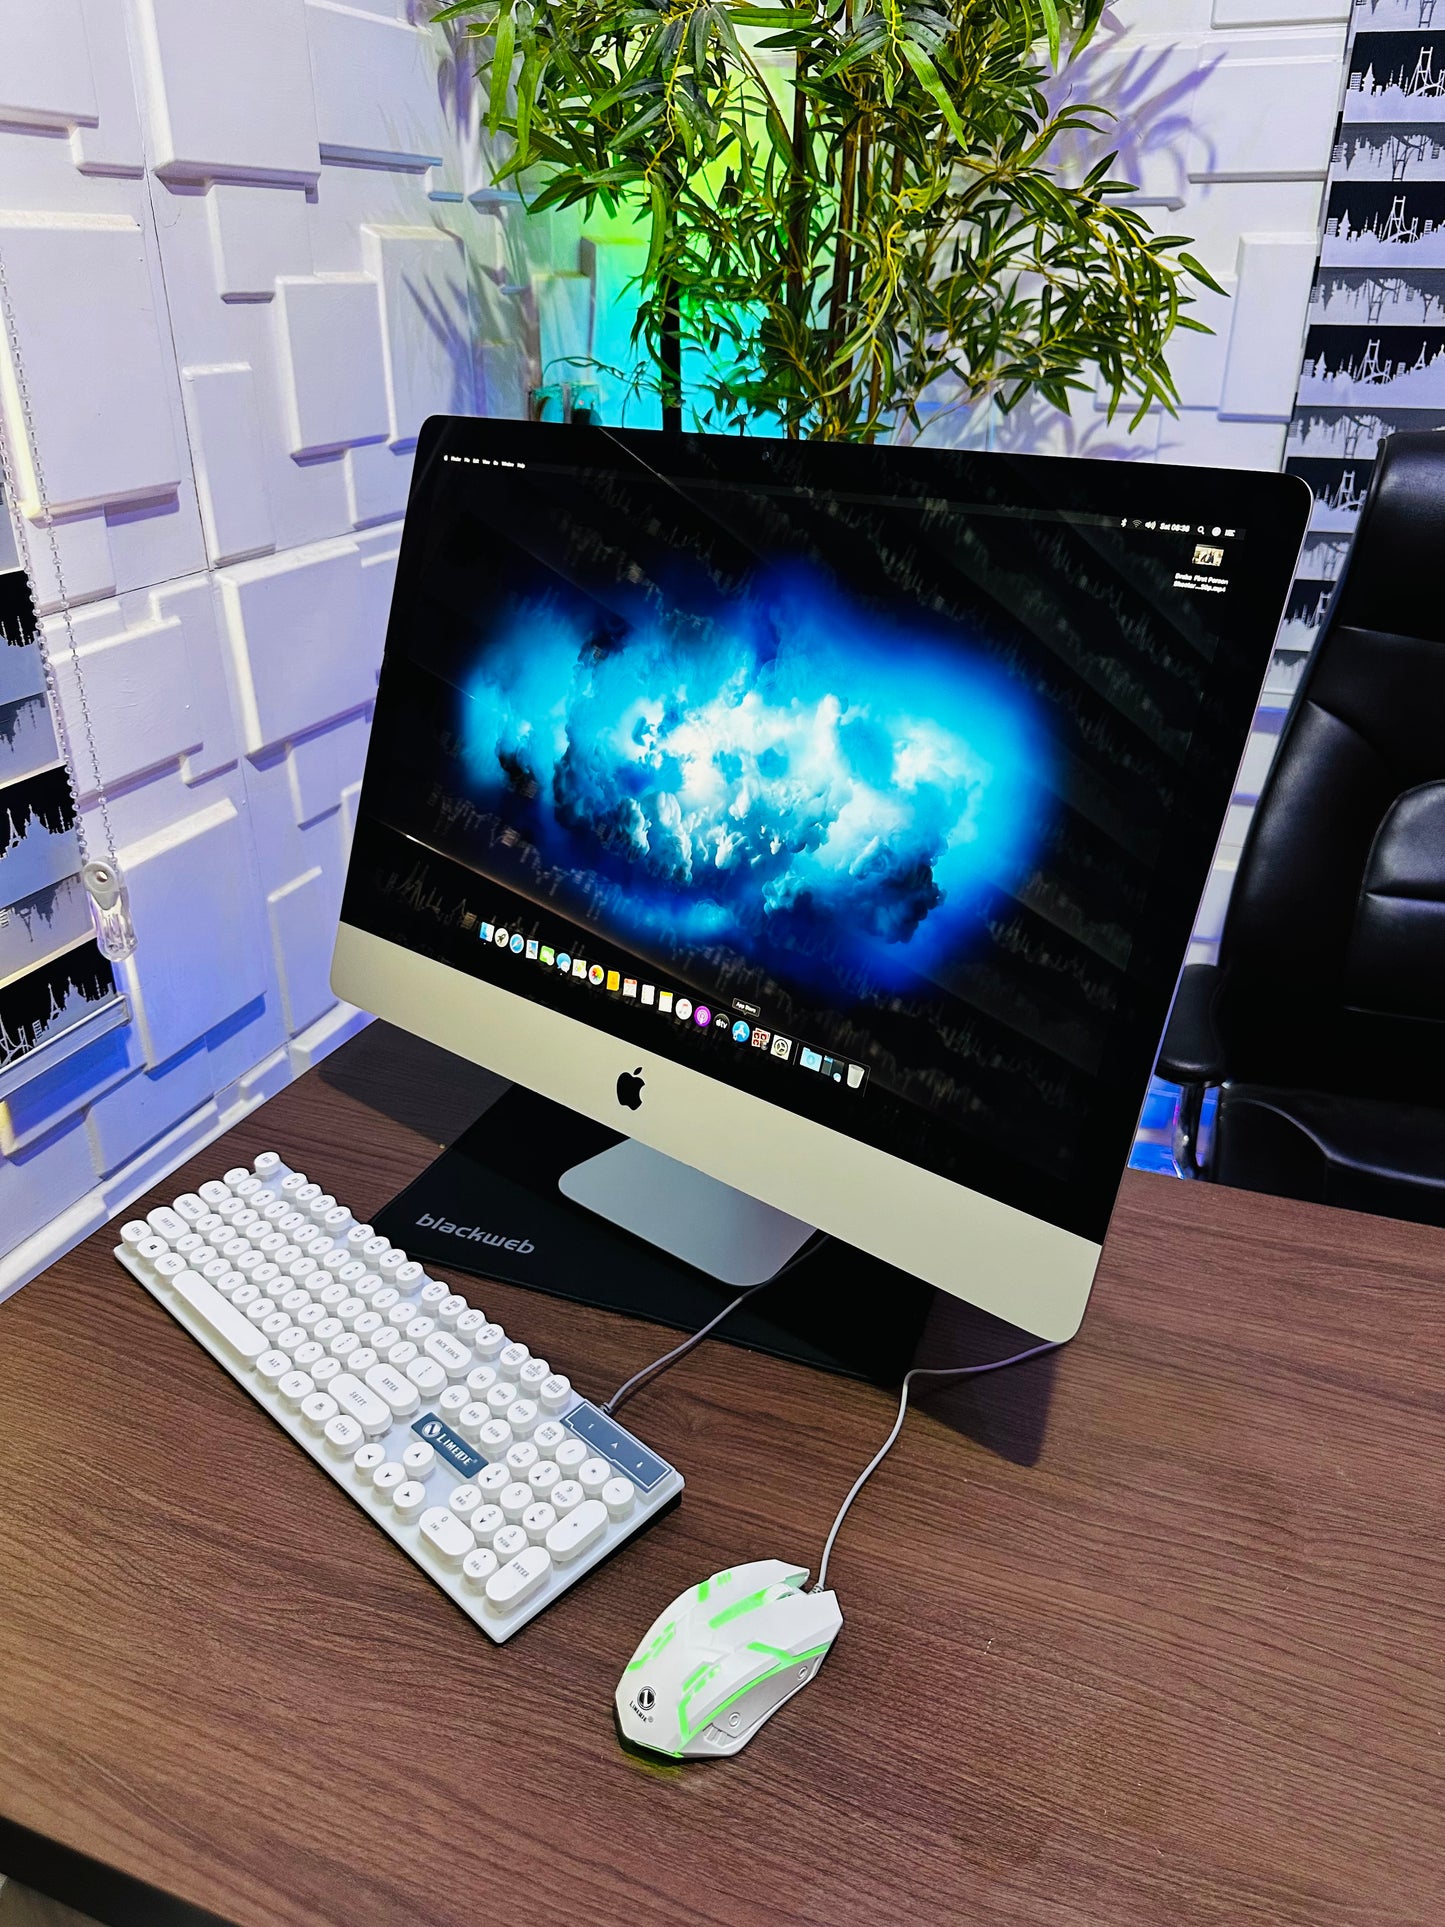 27-inch Apple iMac Retina 5K 2017 - Intel Core i7 - 2TB HDD + 128GB SSD - 16GB RAM - 8GB Radeon Pro 580 Graphics